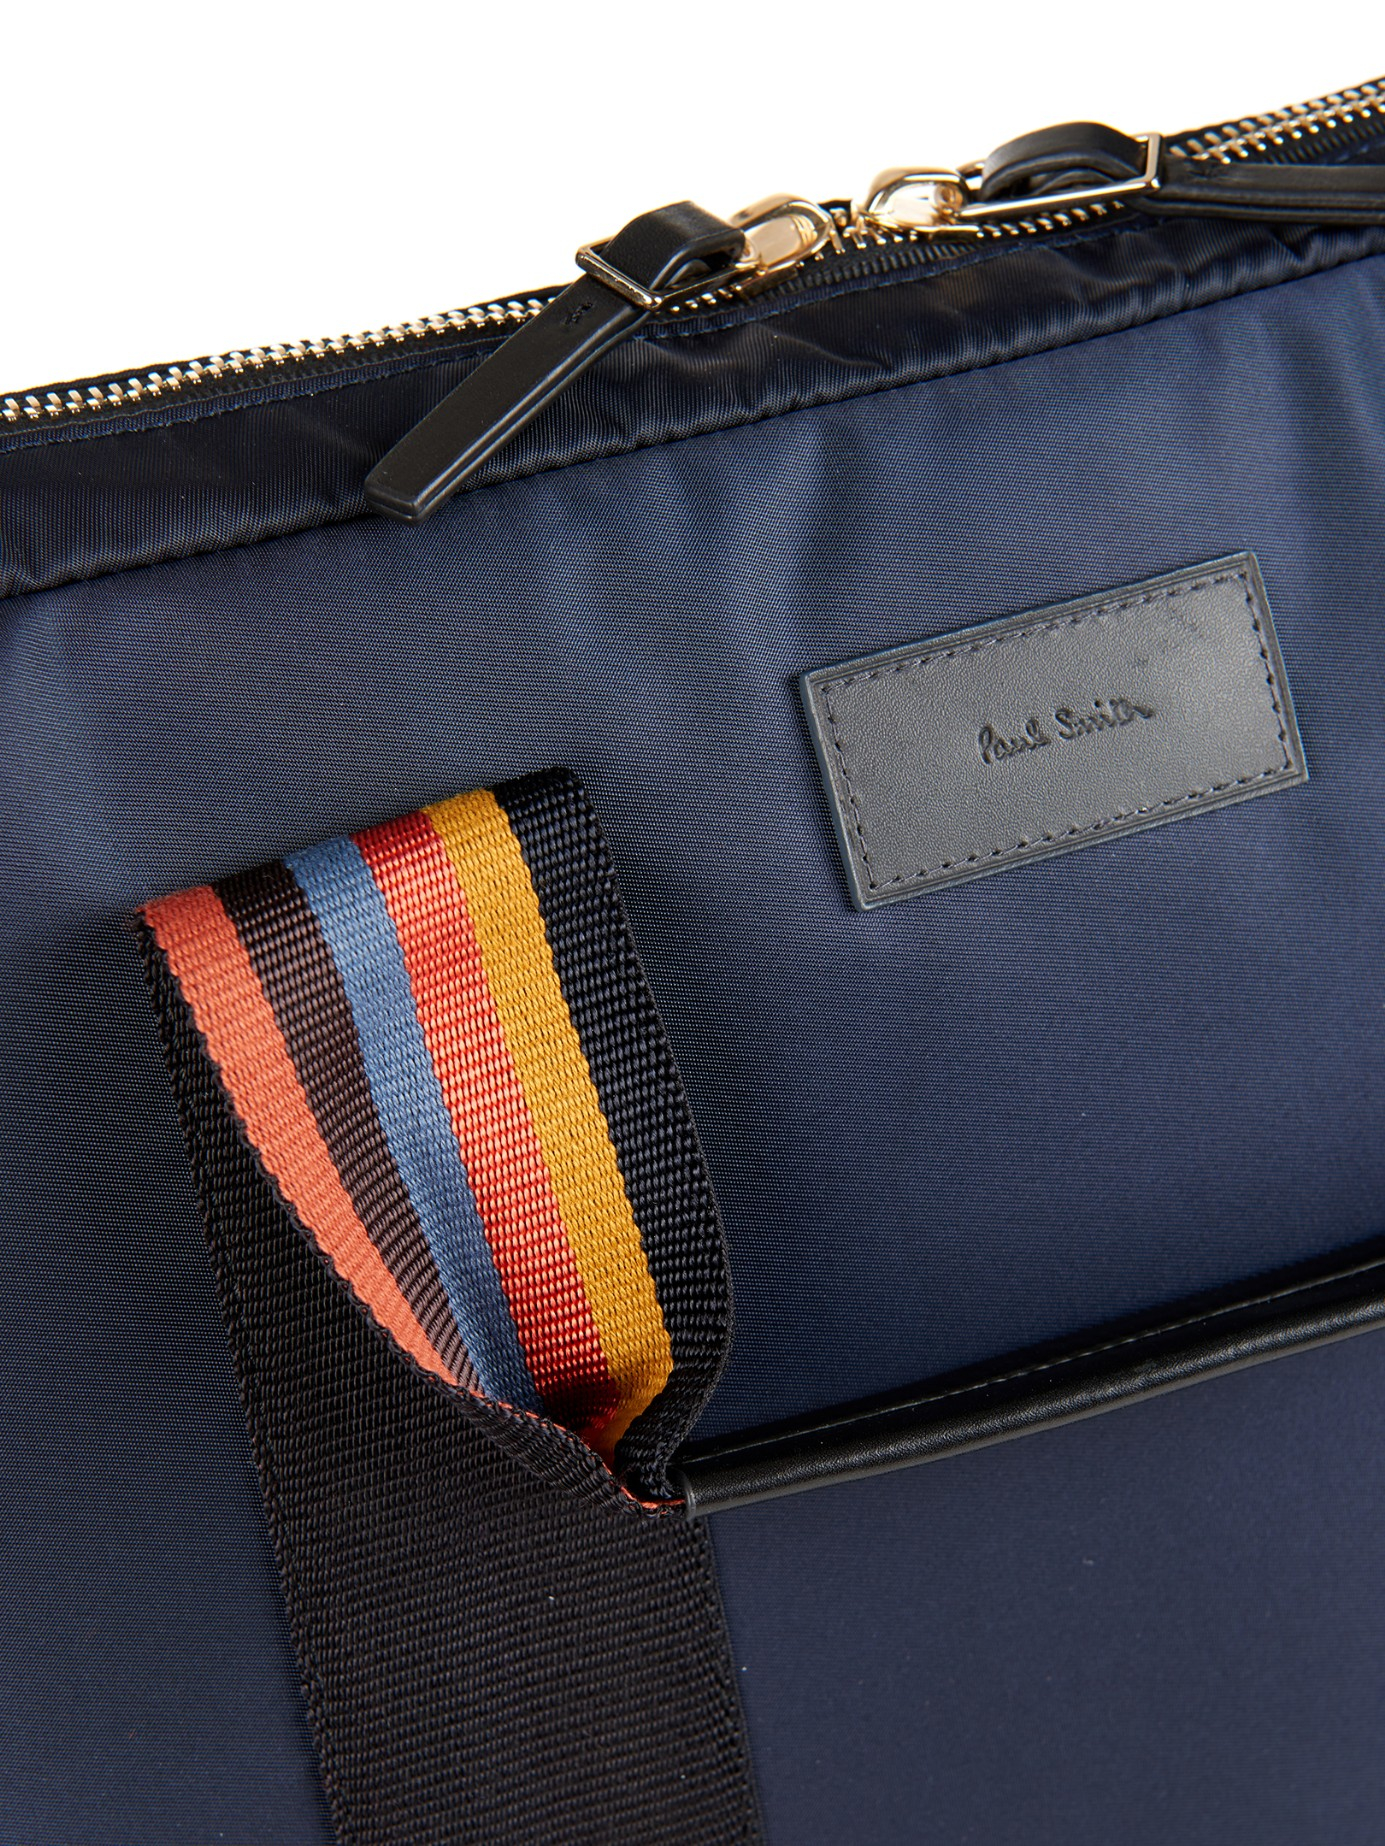 Paul Smith Nylon Laptop Bag in Blue for Men | Lyst